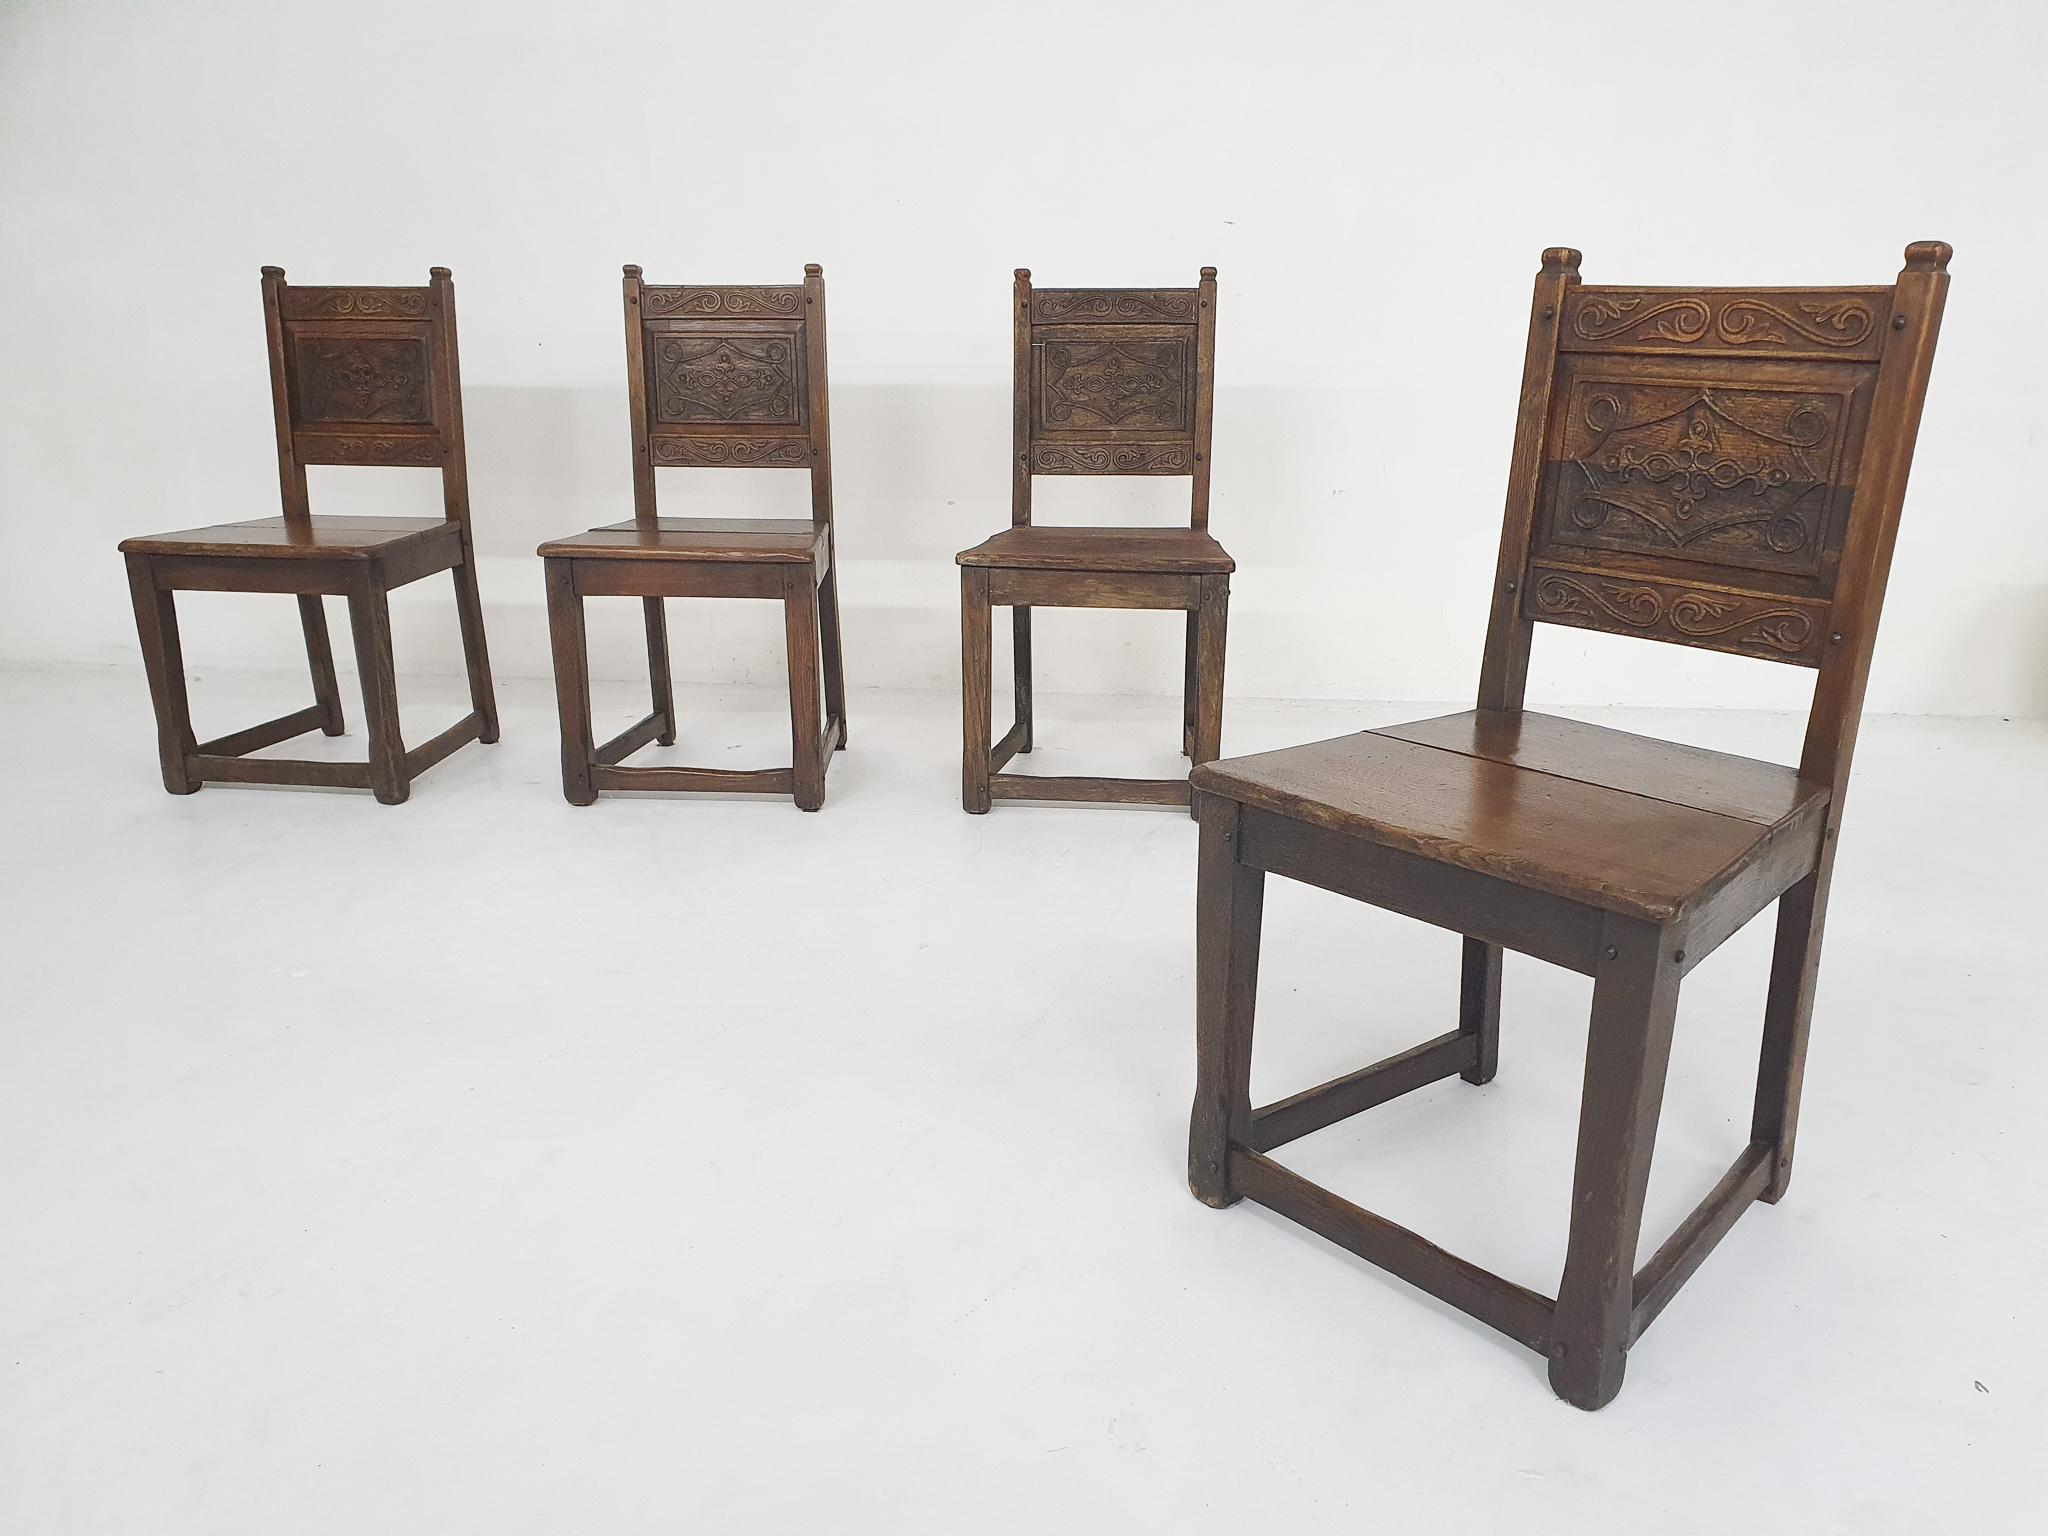 Satz von vier spanischen antiken Esszimmerstühlen, 1930er-Jahre
Antike Esszimmerstühle aus massiver Eiche, mit handgeschnitzten Rückenlehnen. Die Stühle haben keine Schrauben, sondern nur Holzverbindungen, was die Stühle ein wenig wackelig macht,